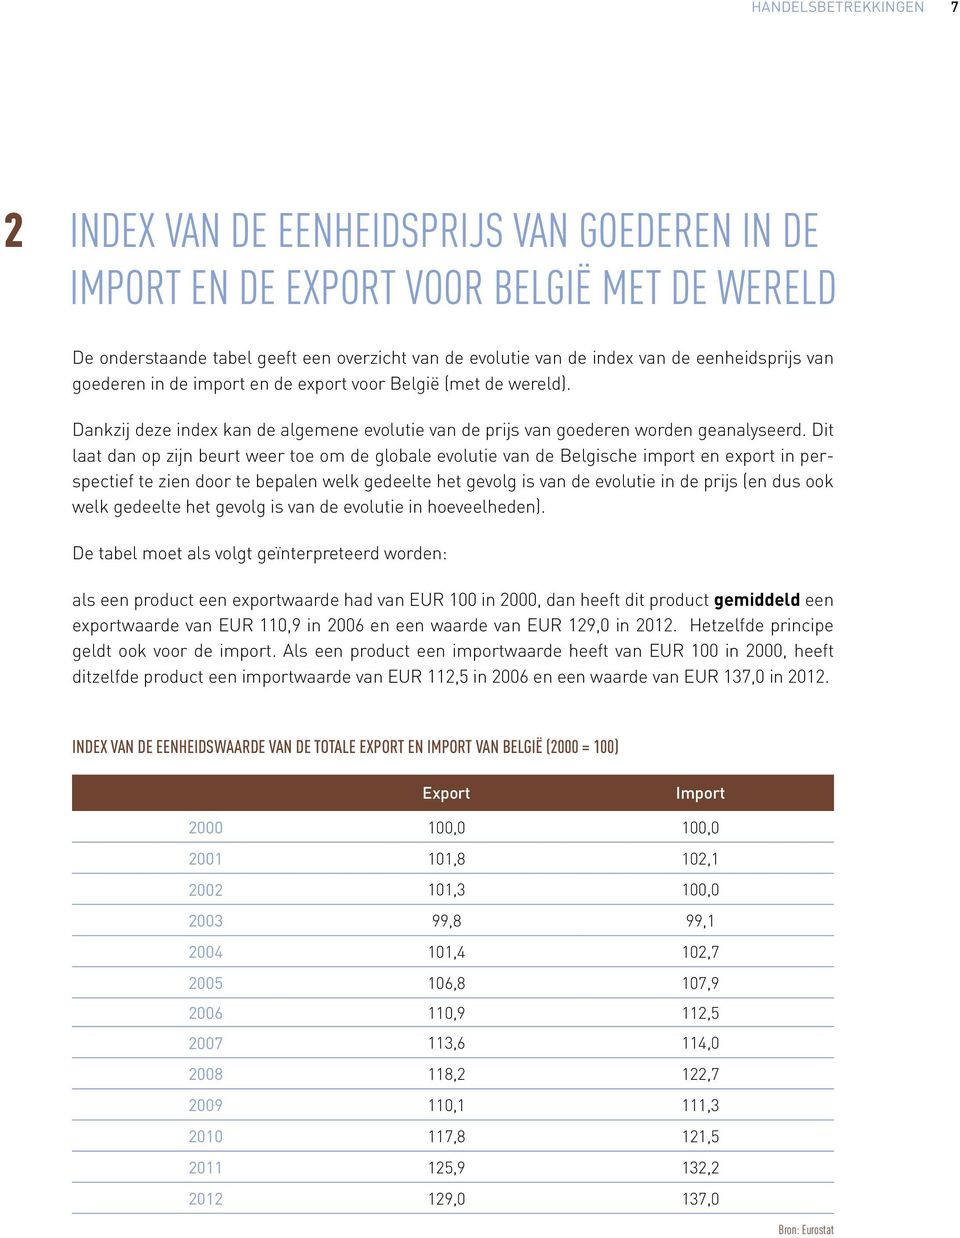 Dit laat dan op zijn beurt weer toe om de globale evolutie van de Belgische import en export in perspectief te zien door te bepalen welk gedeelte het gevolg is van de evolutie in de prijs (en dus ook